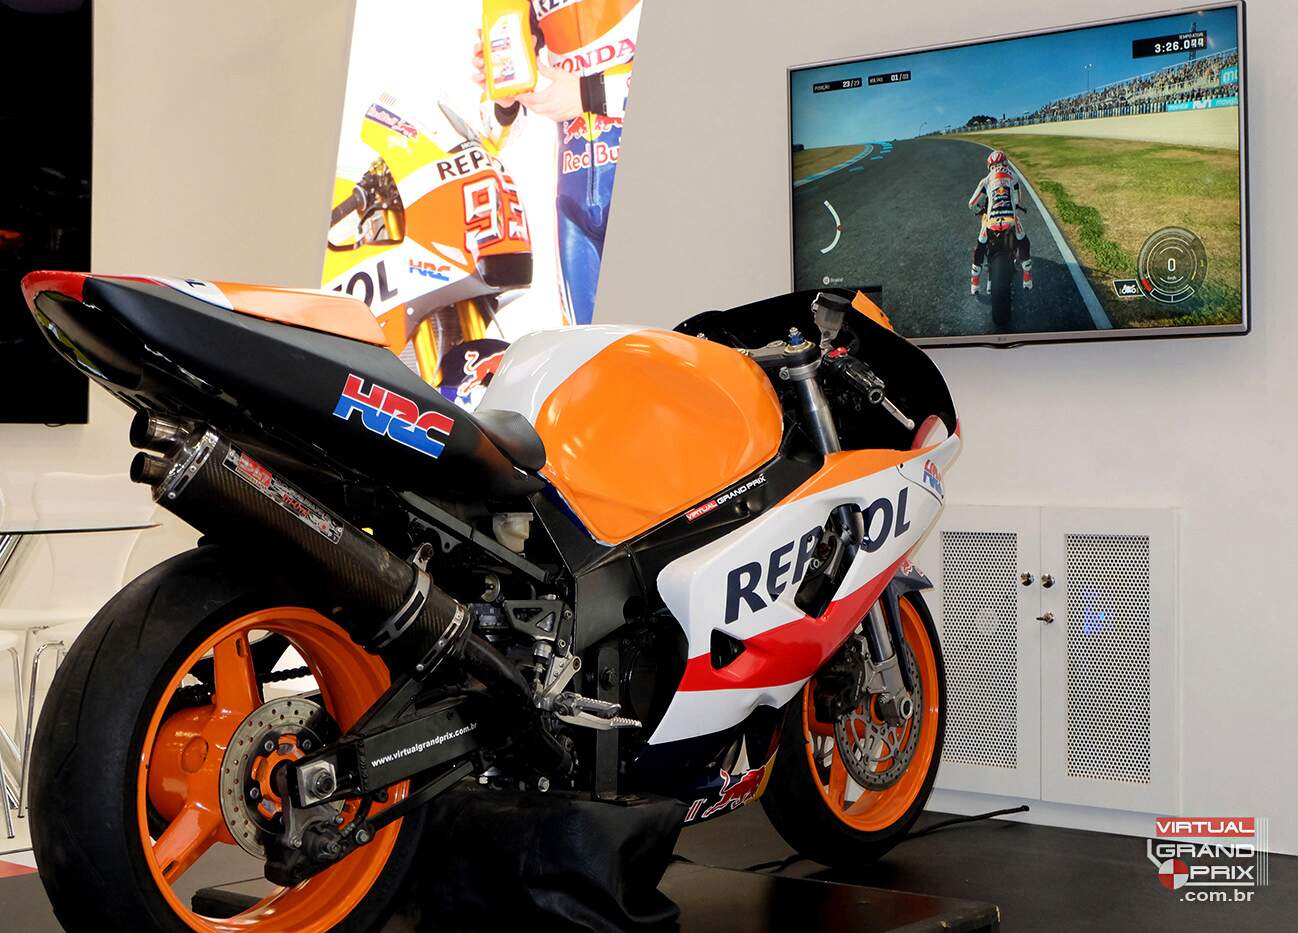 Simulador MotoGP Repsol @ Salão Duas Rodas 2017